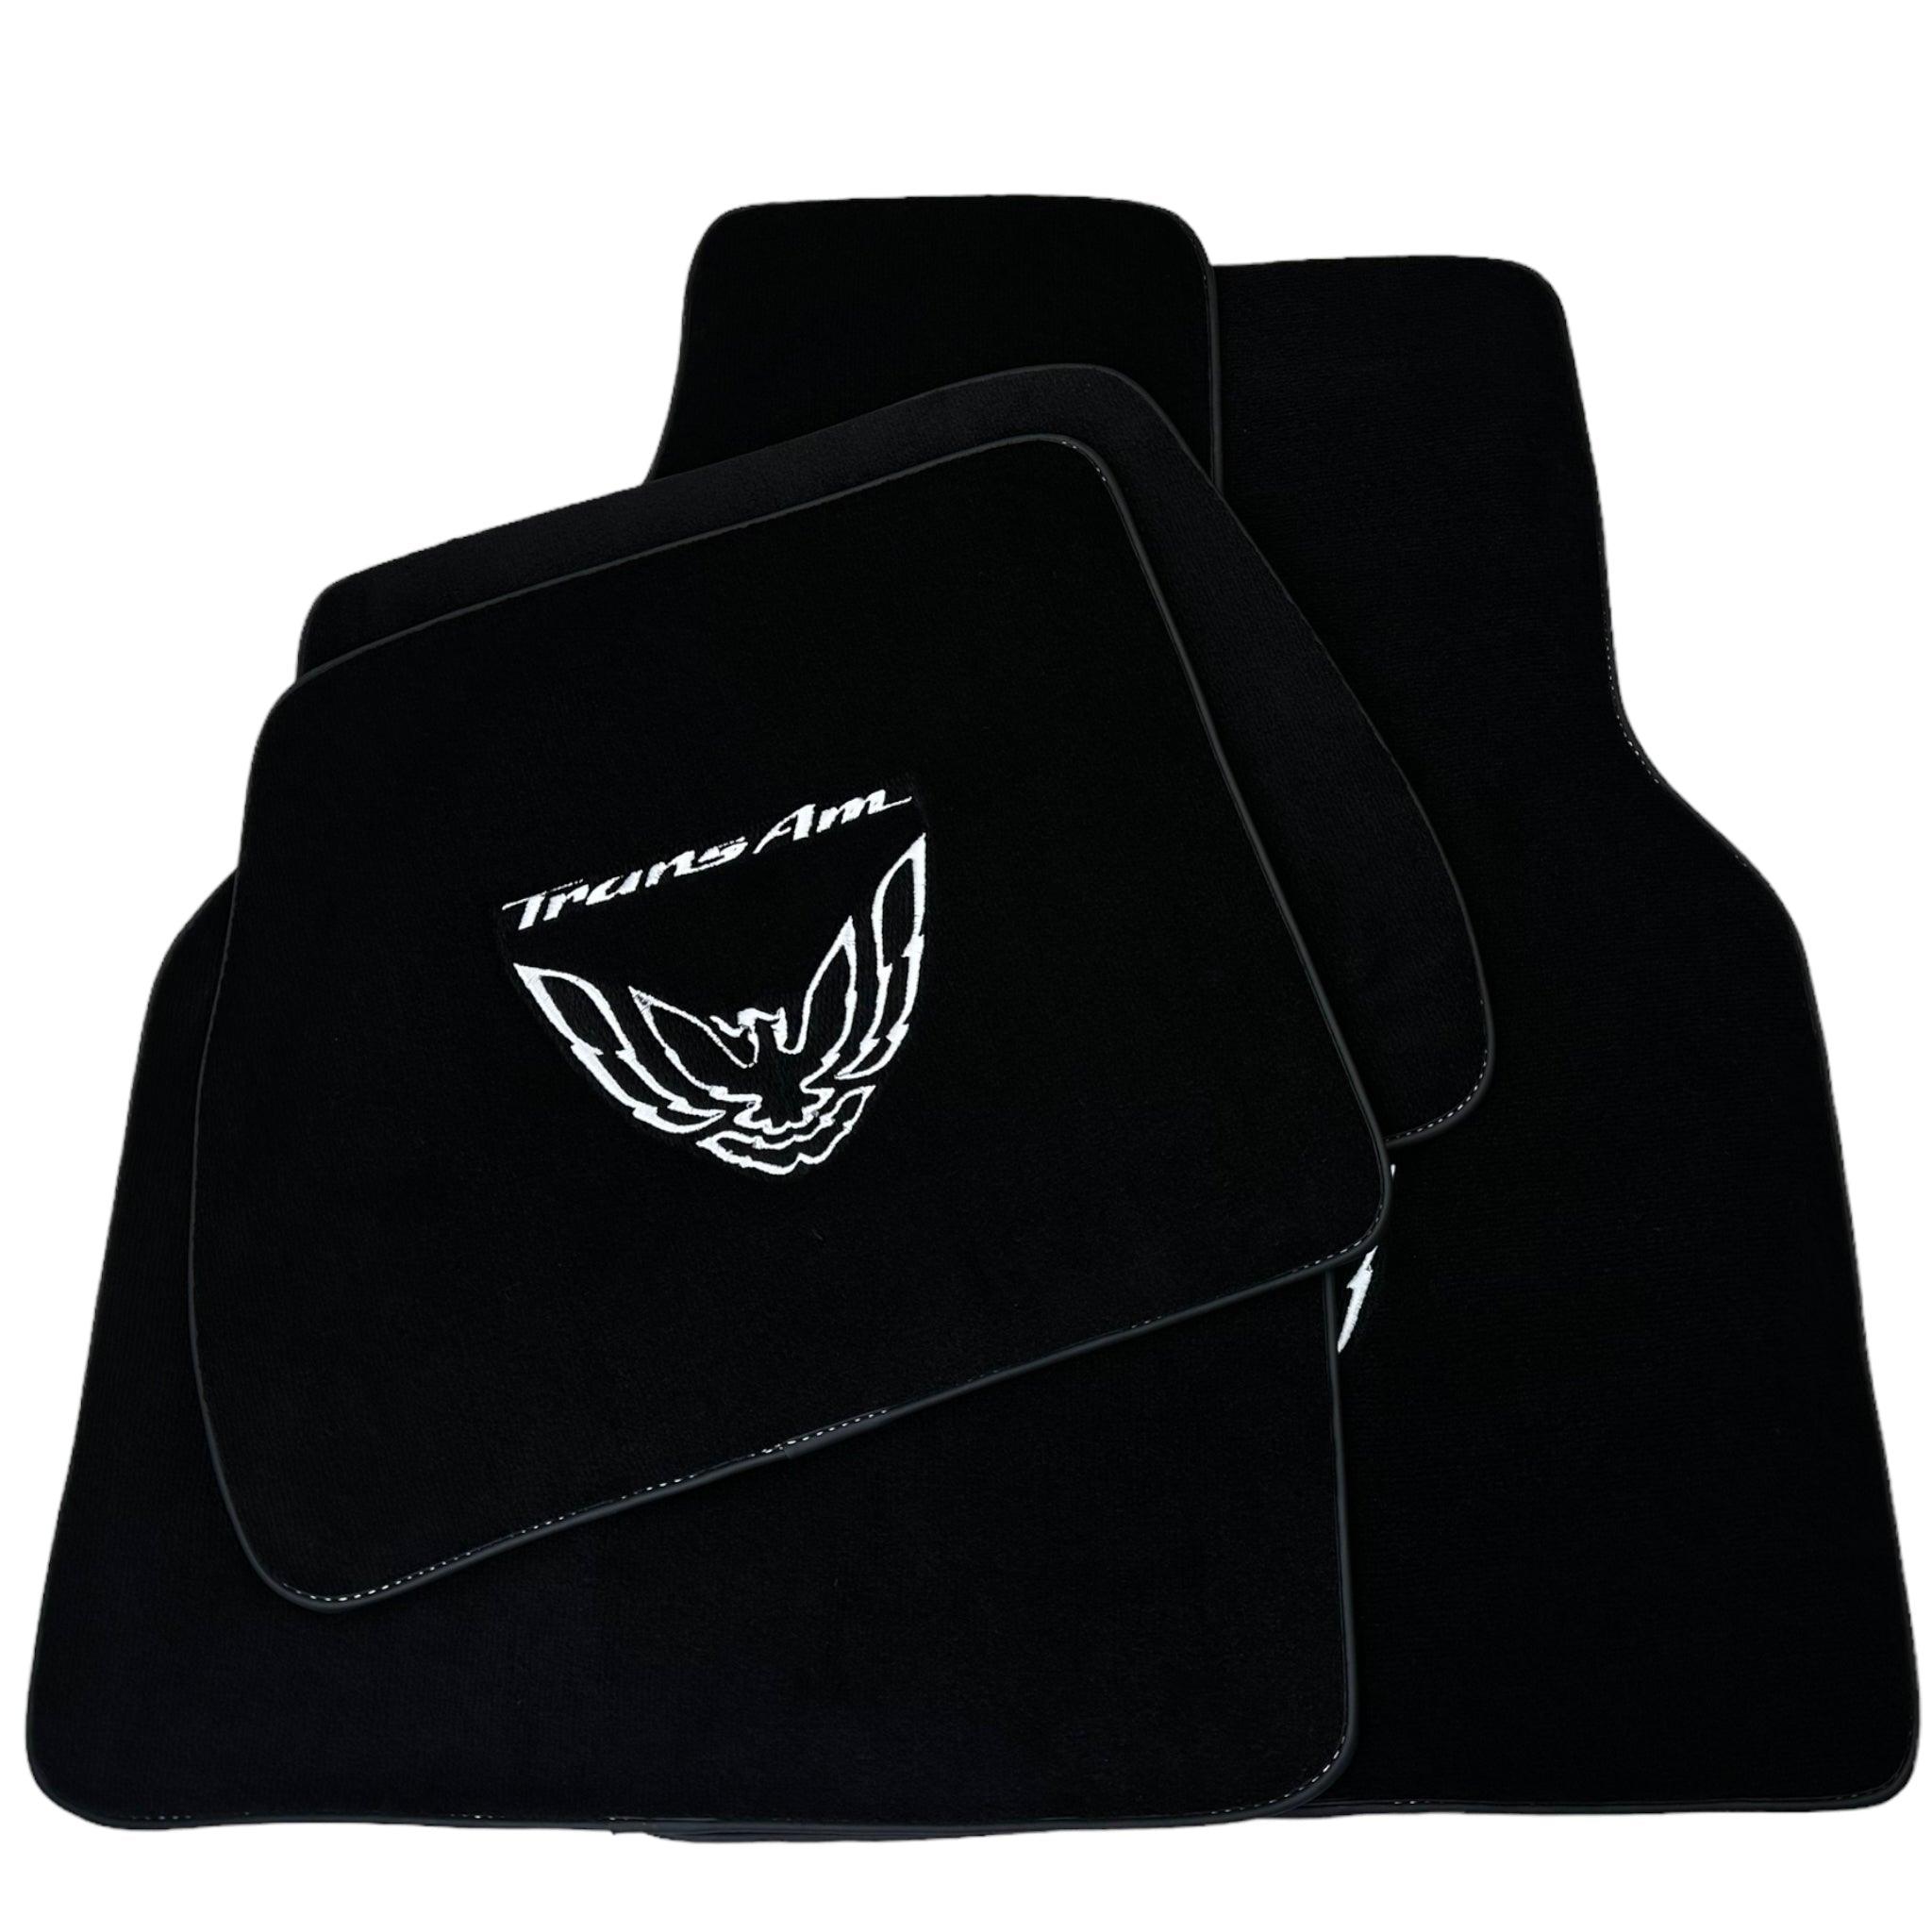 Black Floor Mats for Pontiac FireBird (1993-2002) with Trans Am Logo